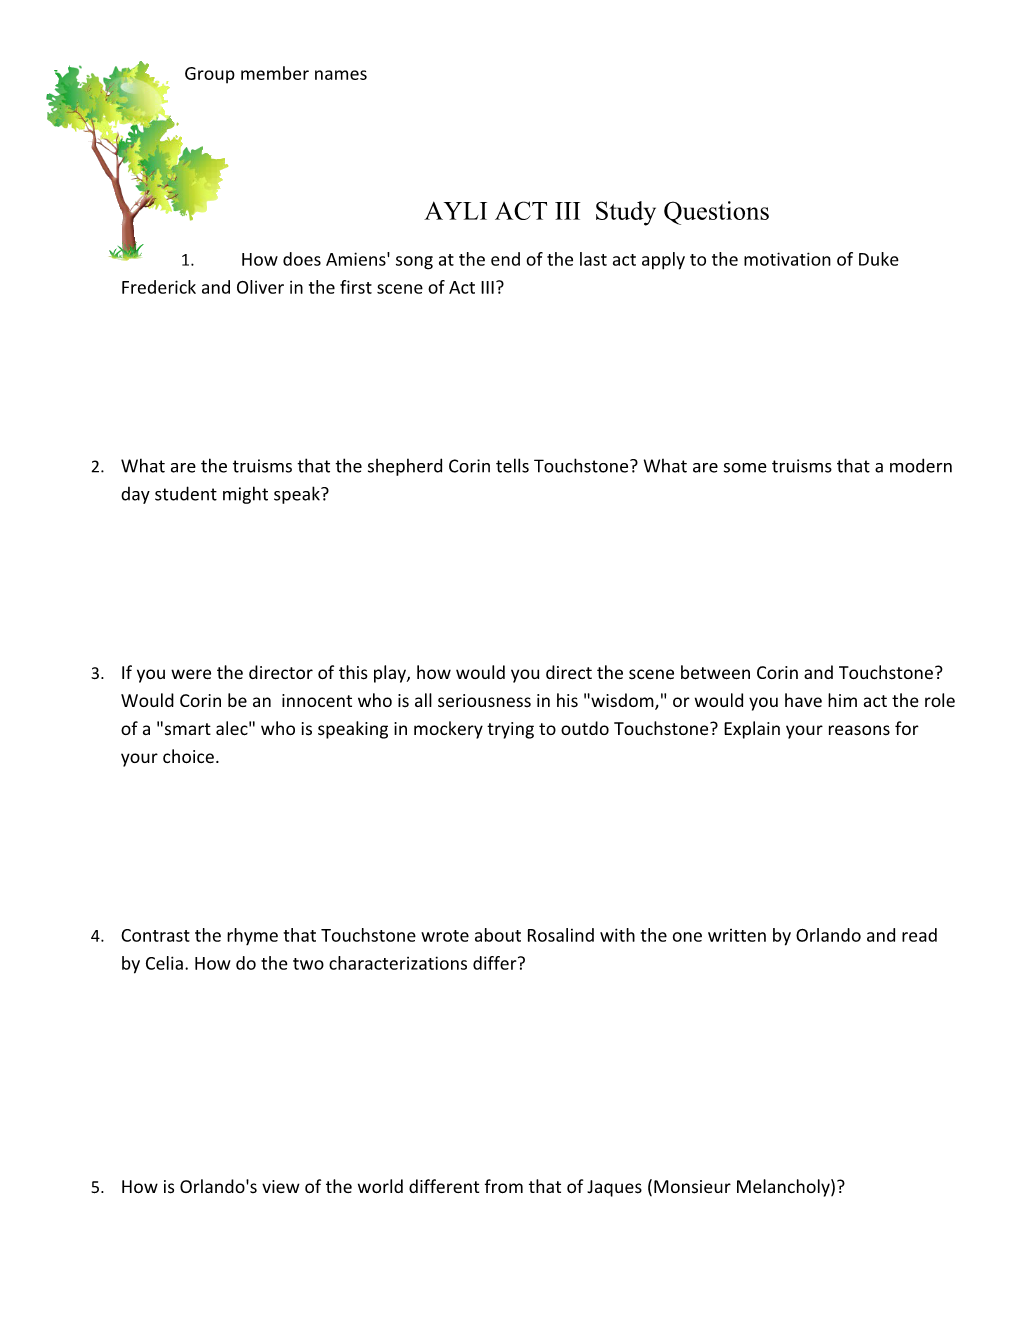 AYLI ACT III Study Questions